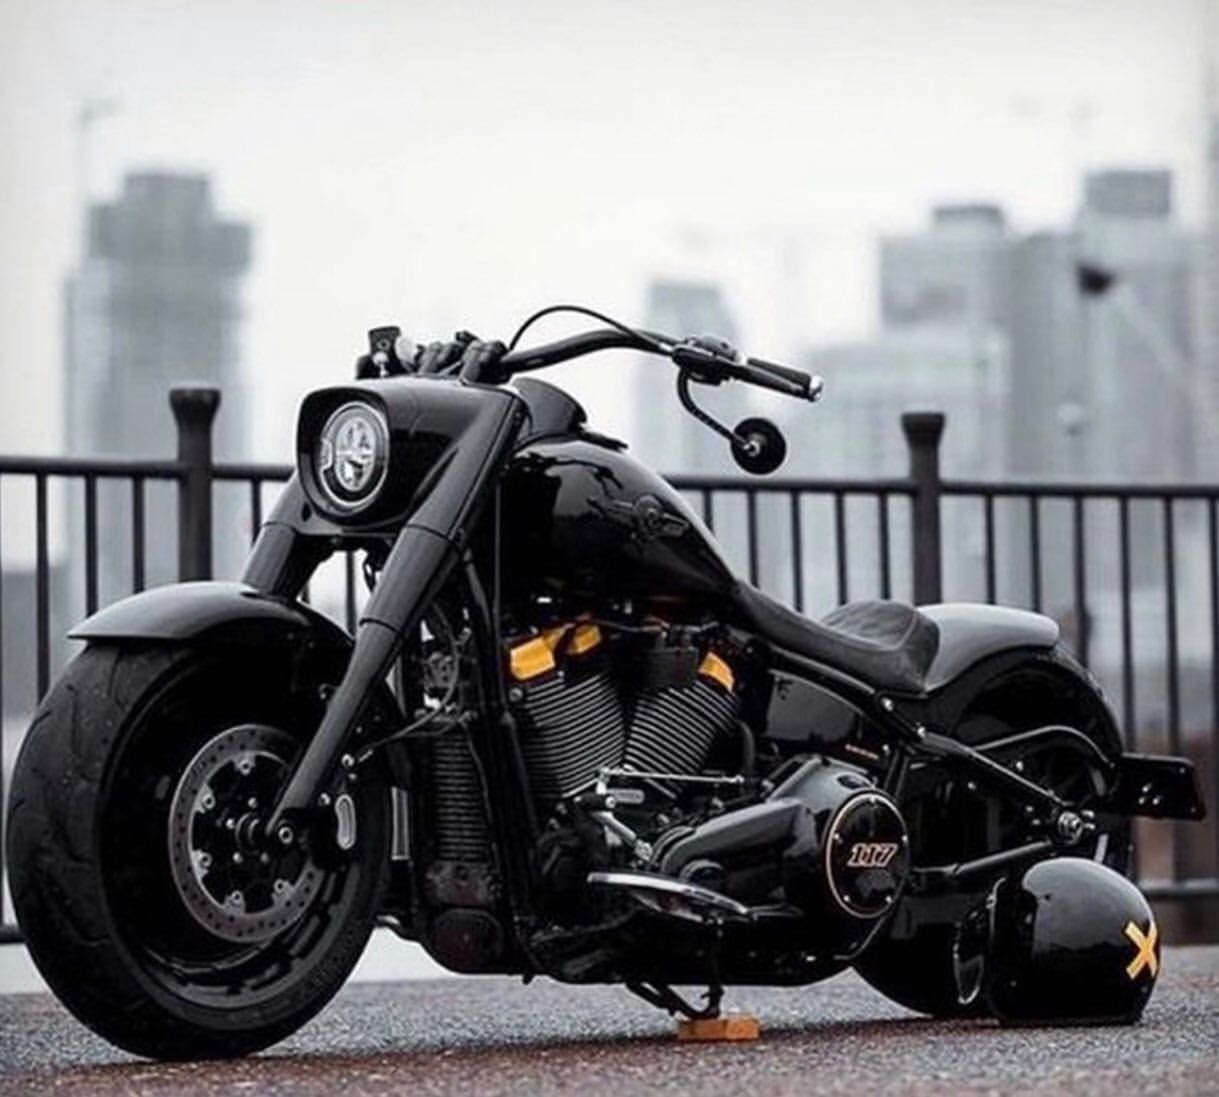 Detail Images Of Harley Davidson Bike Nomer 3